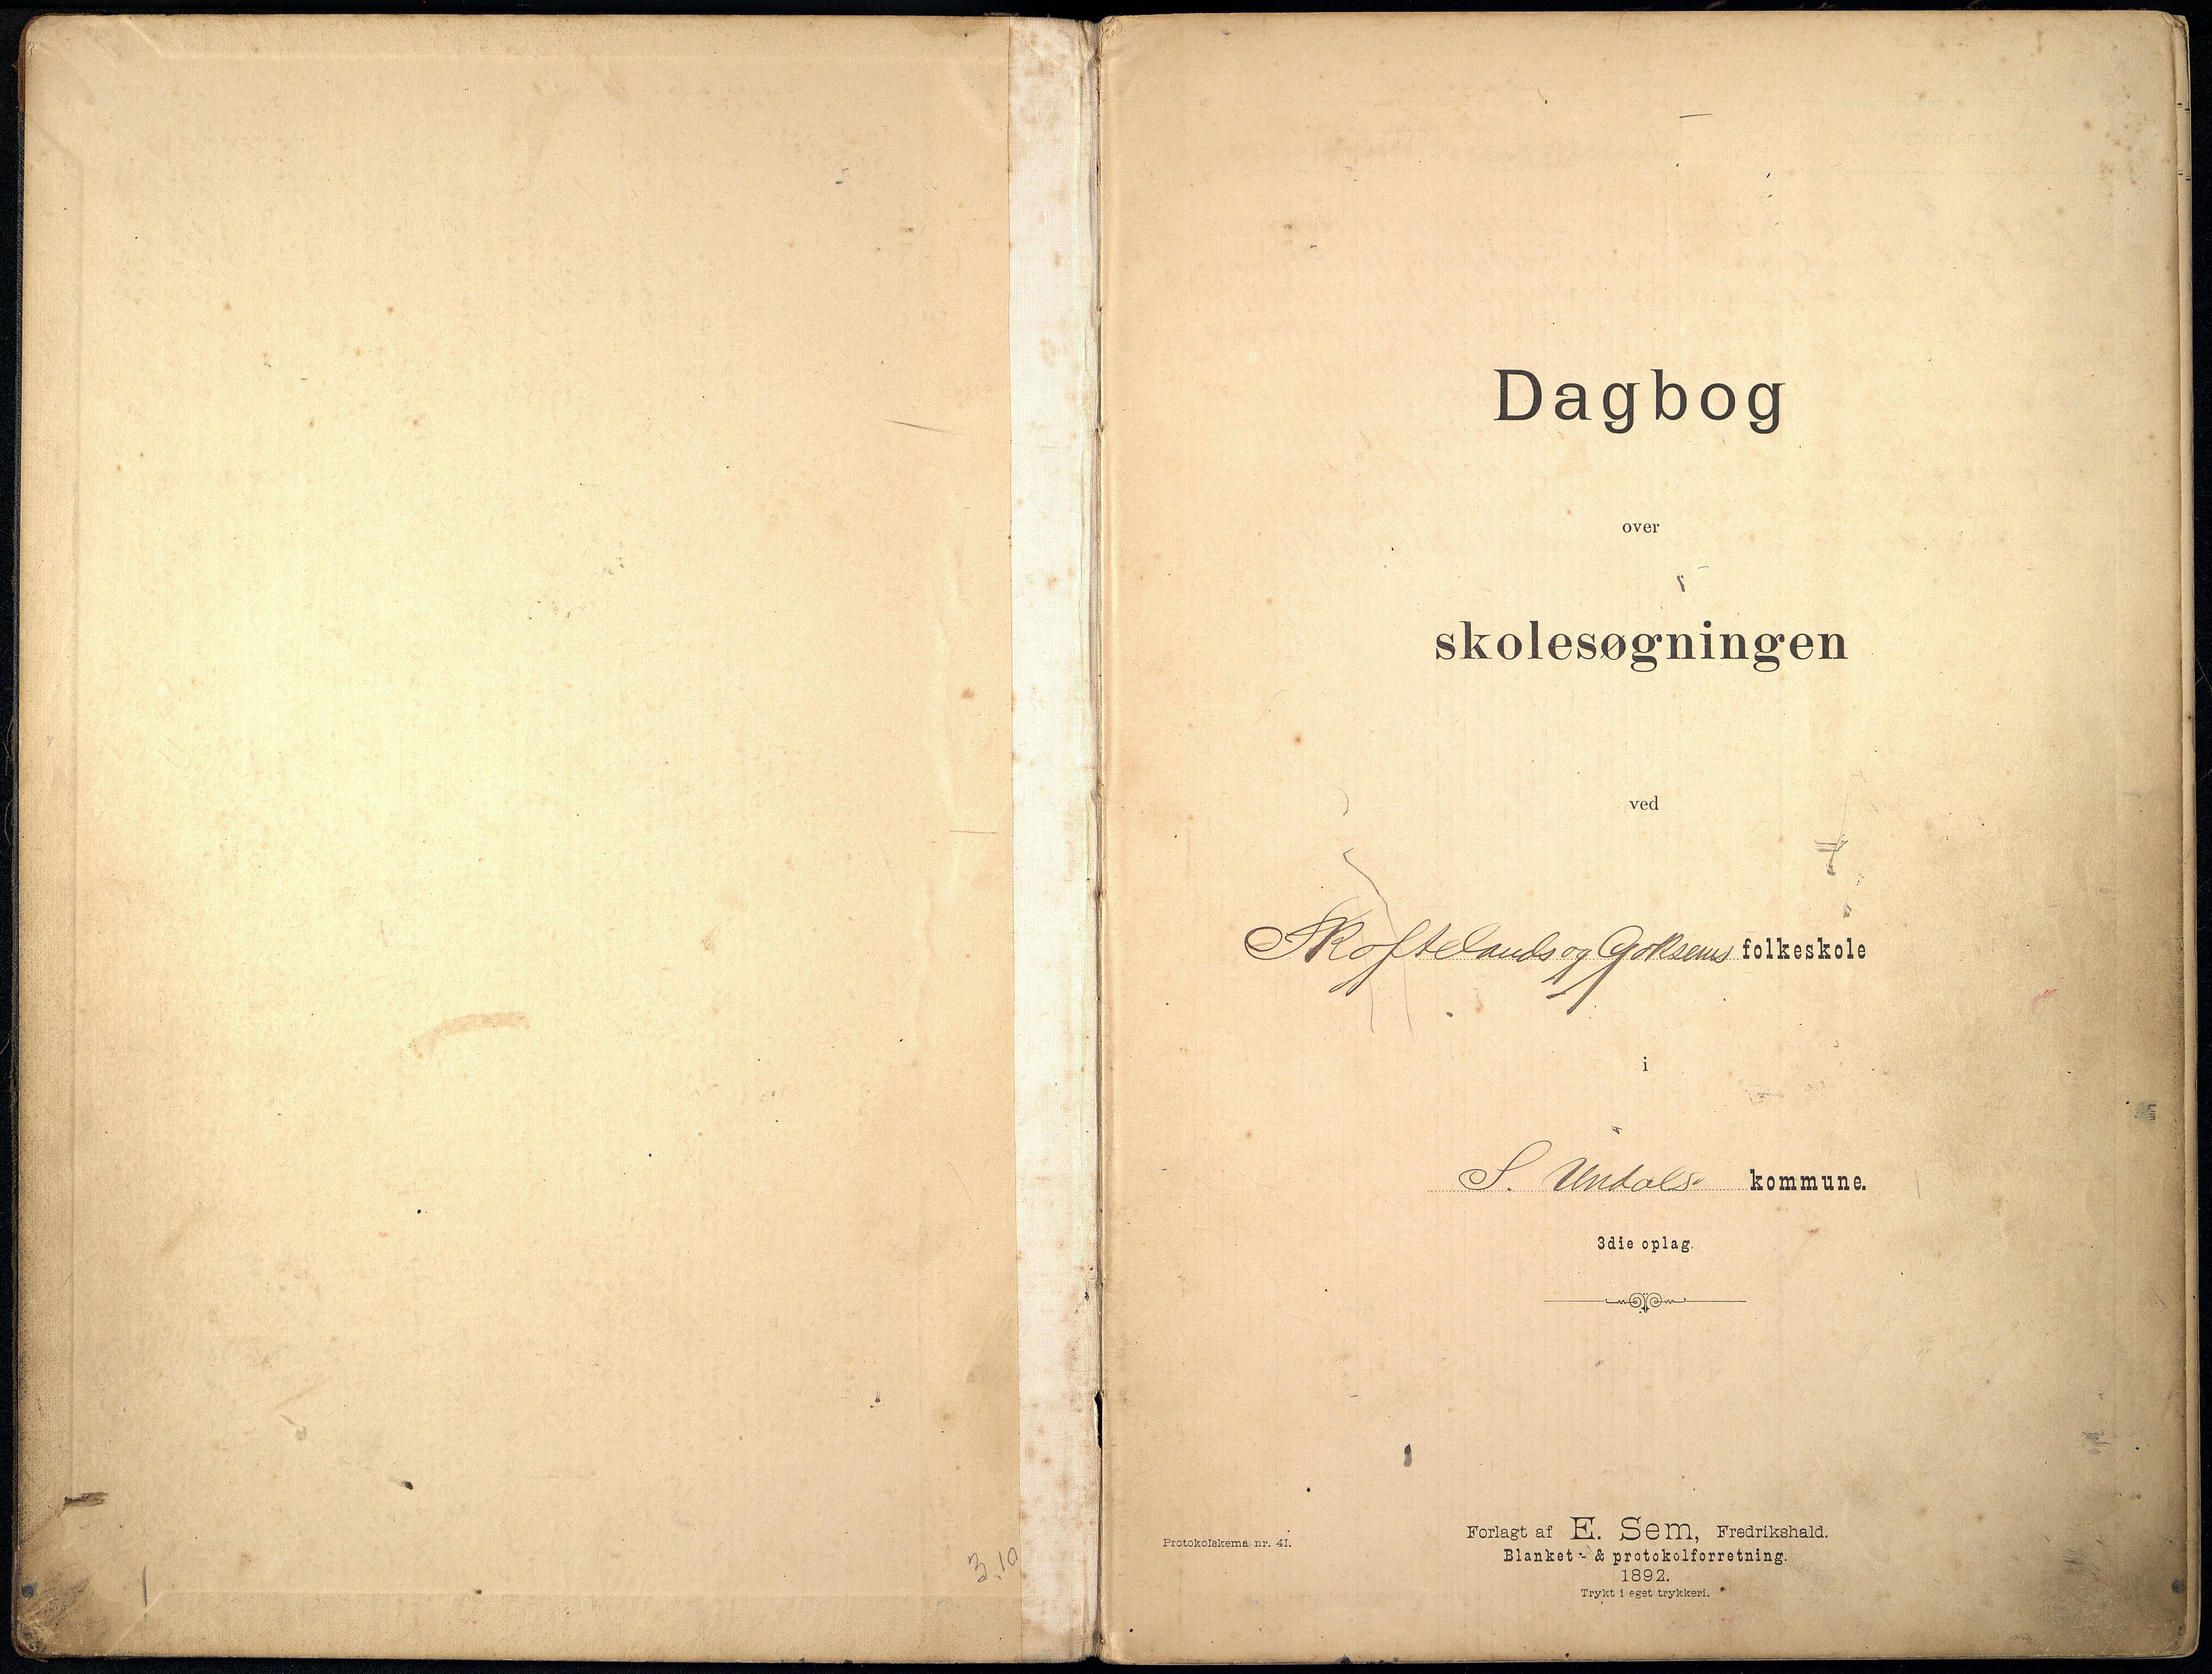 Sør-Audnedal kommune - Goksem Skole, IKAV/1029SØ554/I/L0001: Dagbok, 1896-1911